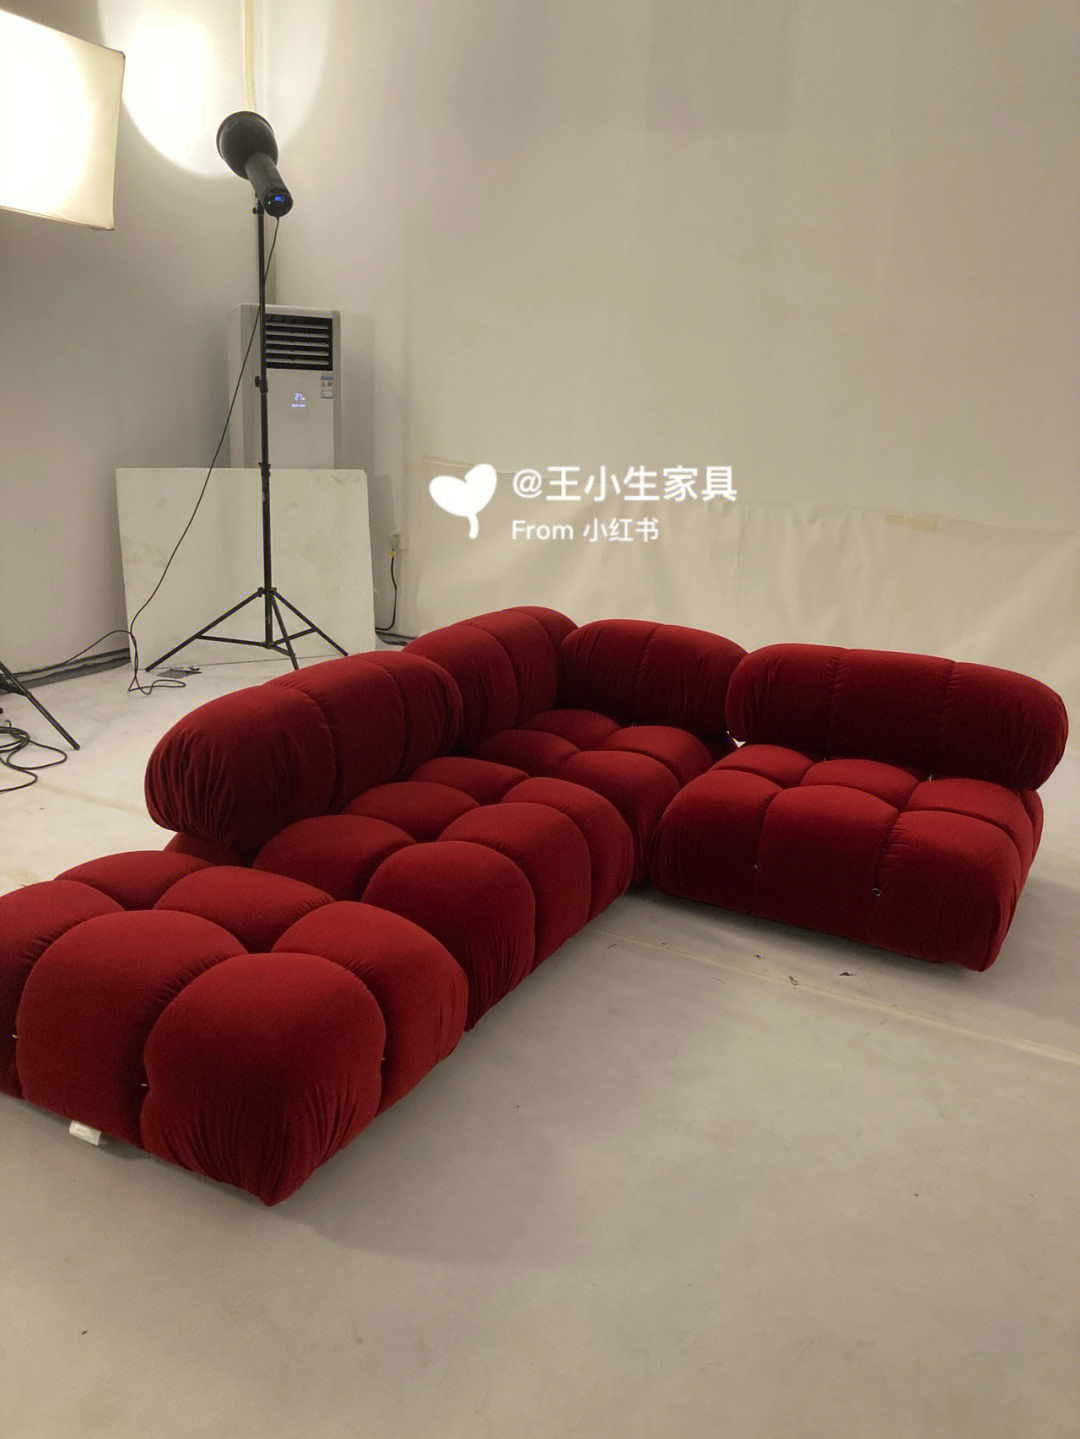 这组模块沙发选用的一个酒红色鹅绒布面料,看起来非常的漂亮 很吸引